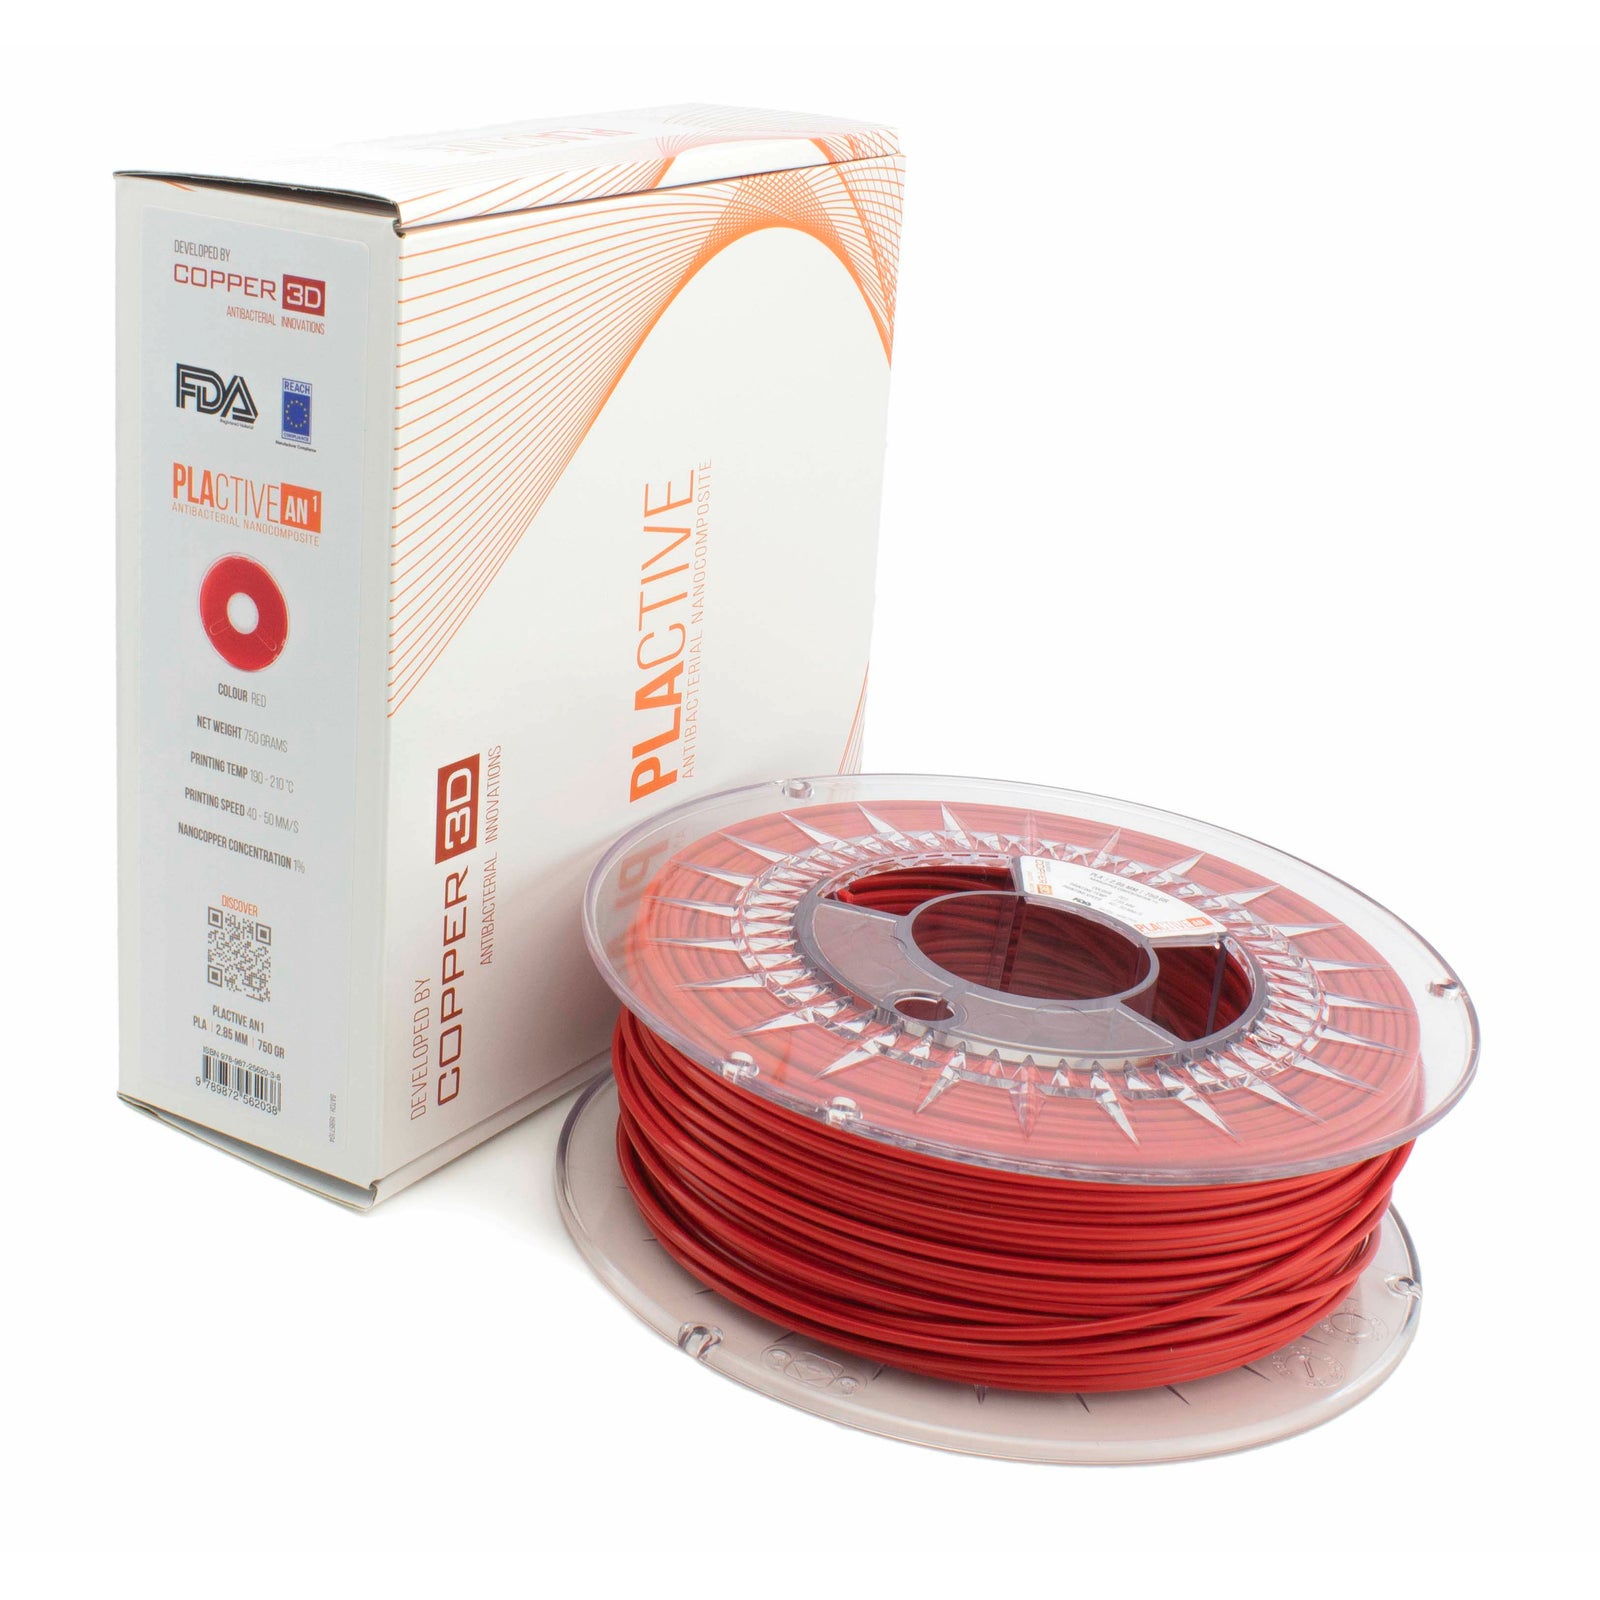 PLA Filament Copper 3D PLActive - Innovative Antibacterial 1.75mm 50gram Classic Red Color 3D Printer Filament